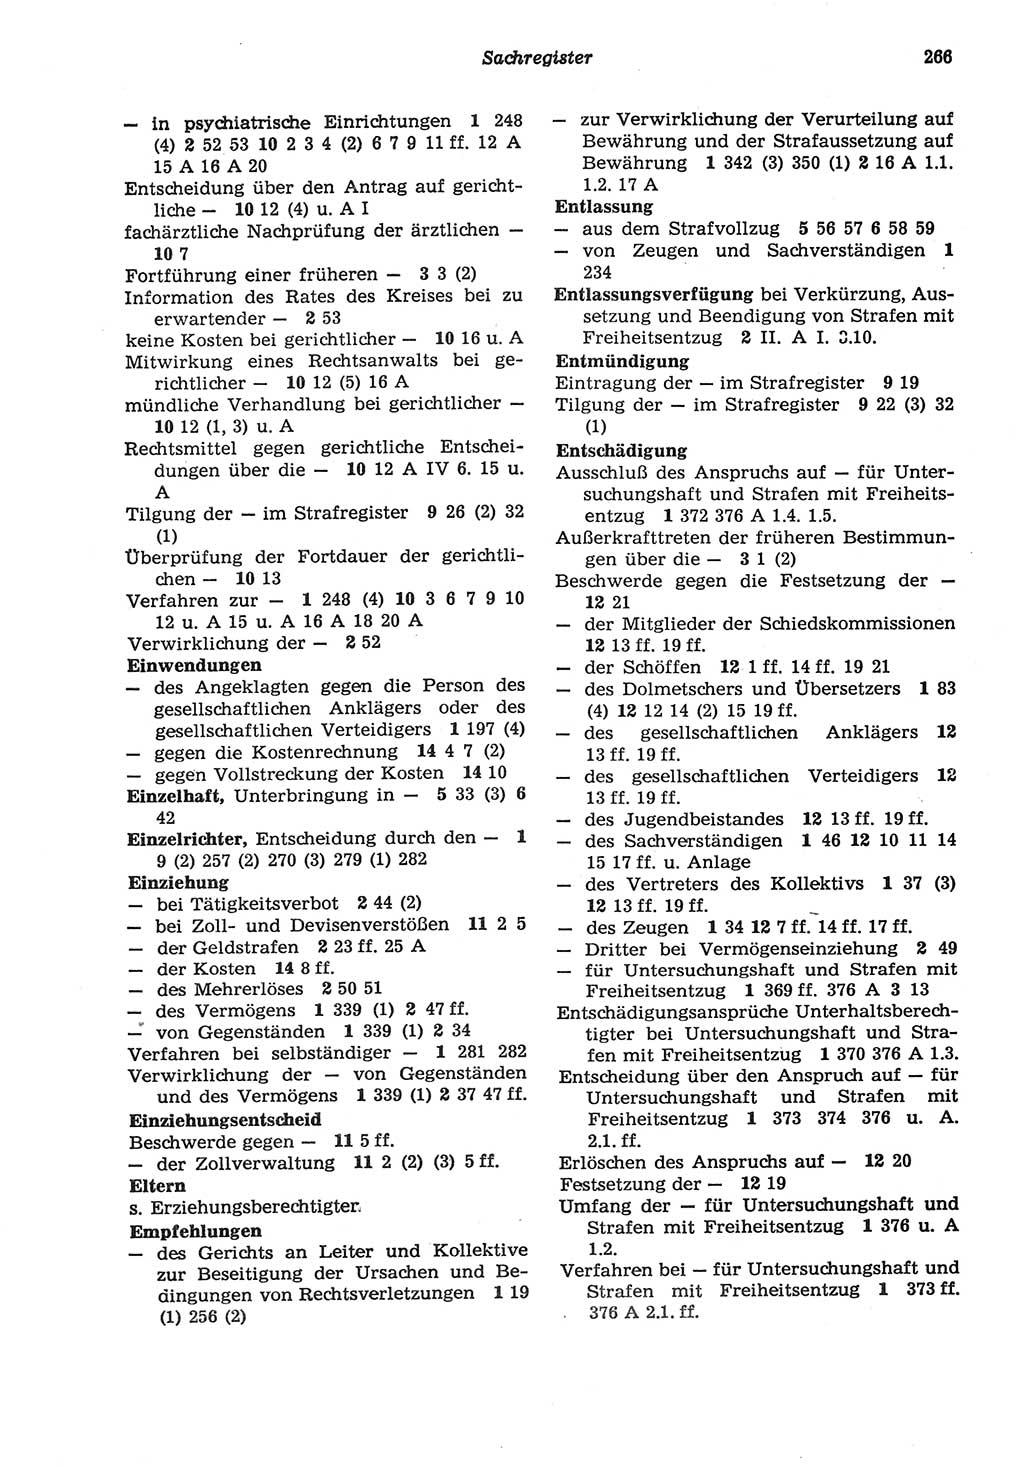 Strafprozeßordnung (StPO) der Deutschen Demokratischen Republik (DDR) sowie angrenzende Gesetze und Bestimmungen 1977, Seite 266 (StPO DDR Ges. Best. 1977, S. 266)